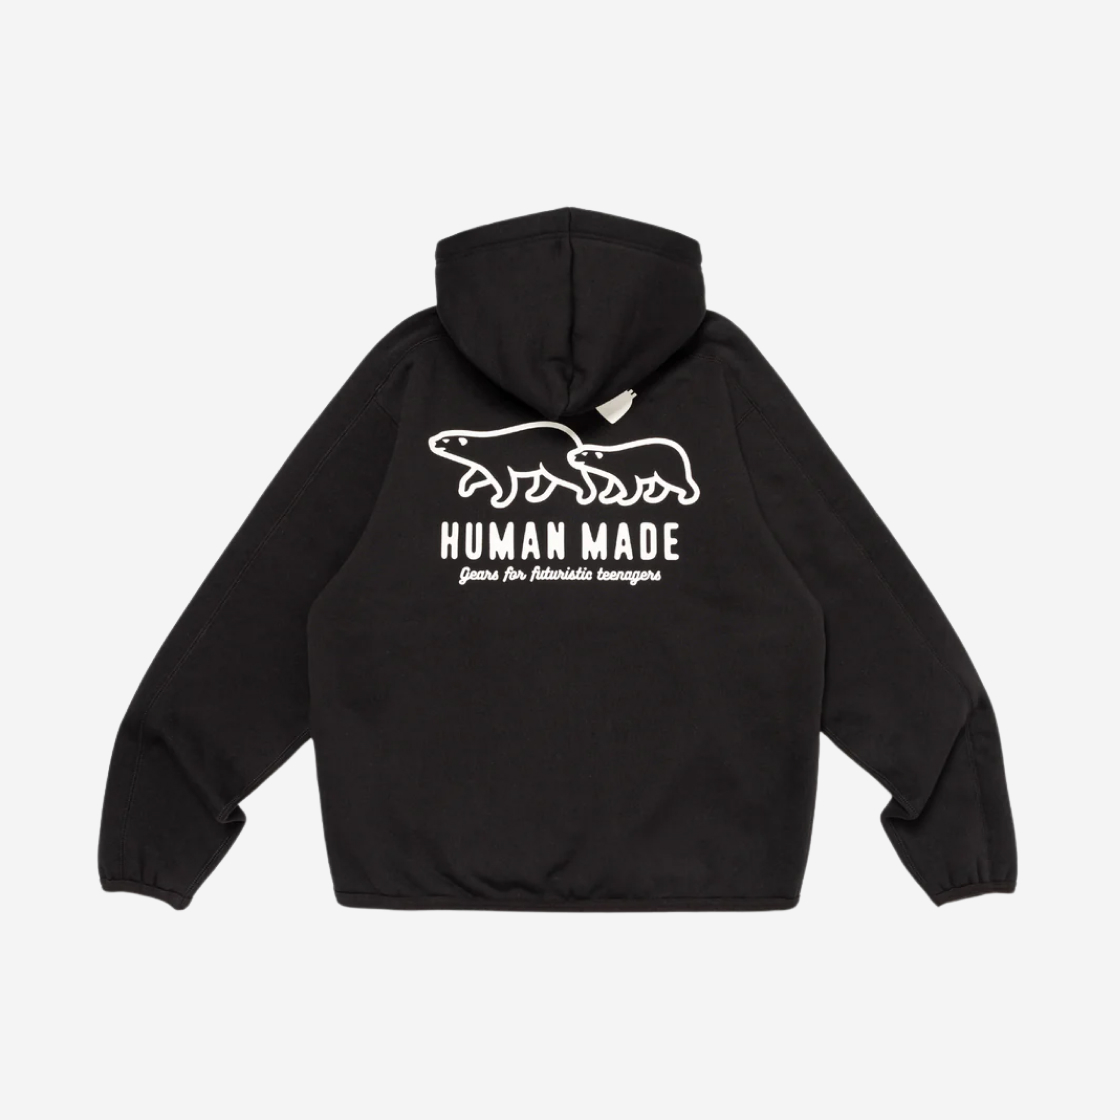 13,800円Human Made Fleece Sweat Zip Hoodie Black